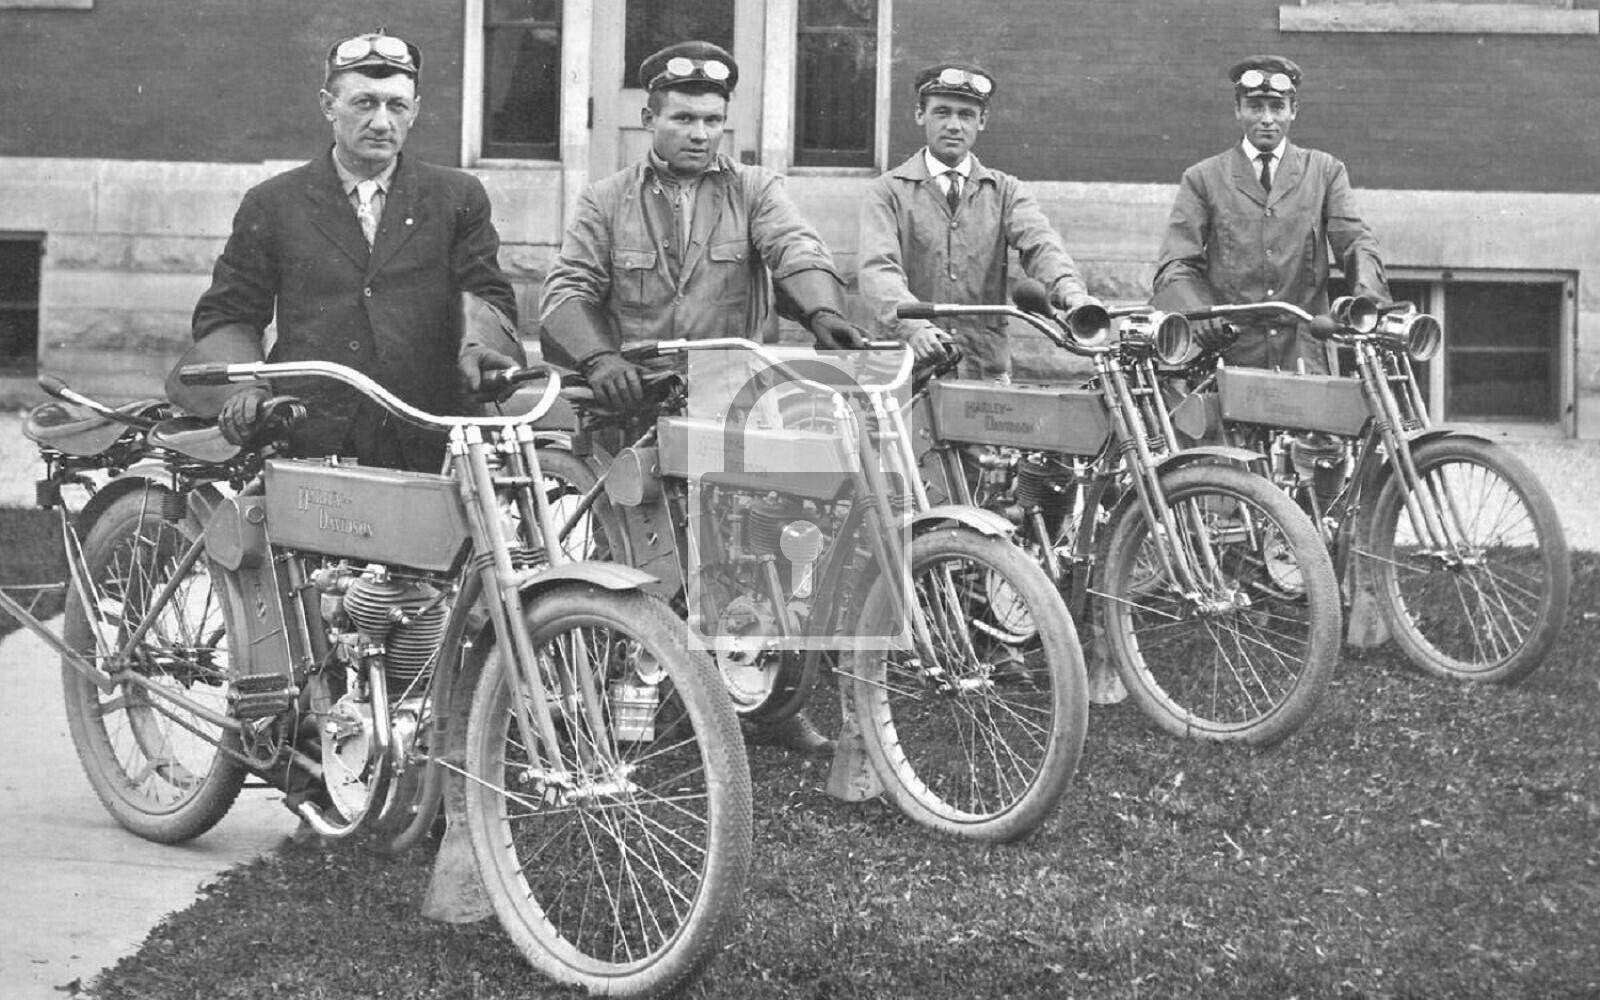 Men On Vintage Motorcycles Kewaunee Wisconsin WI Reprint Postcard